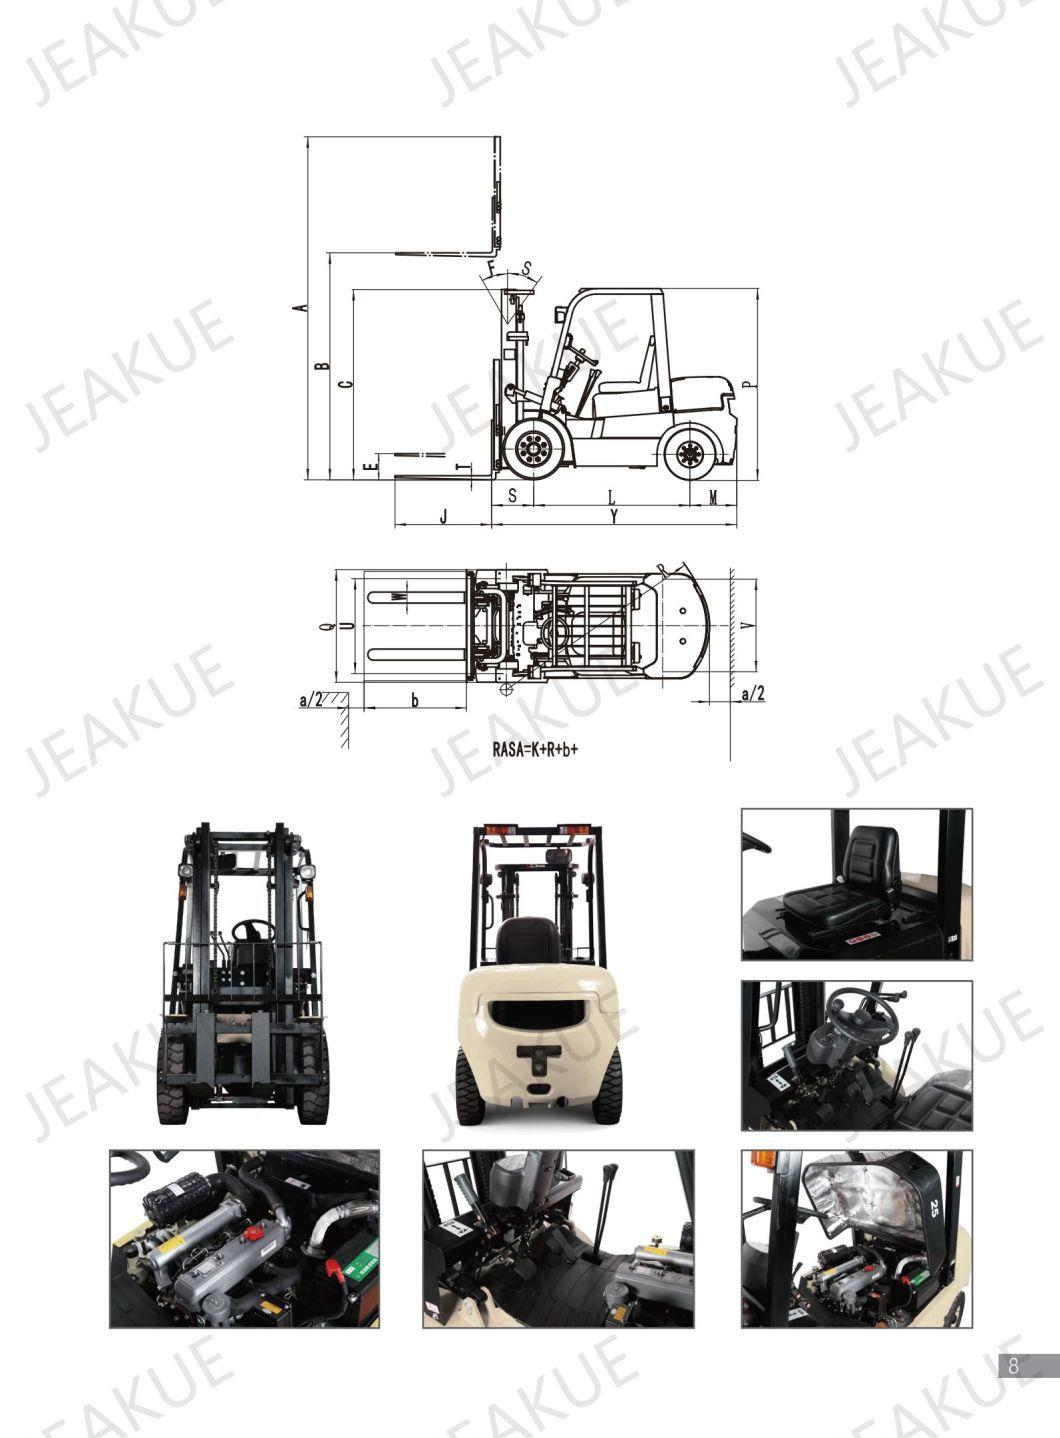 Material Handling Equipment 3ton Diesel Engine New Forklift Trucks